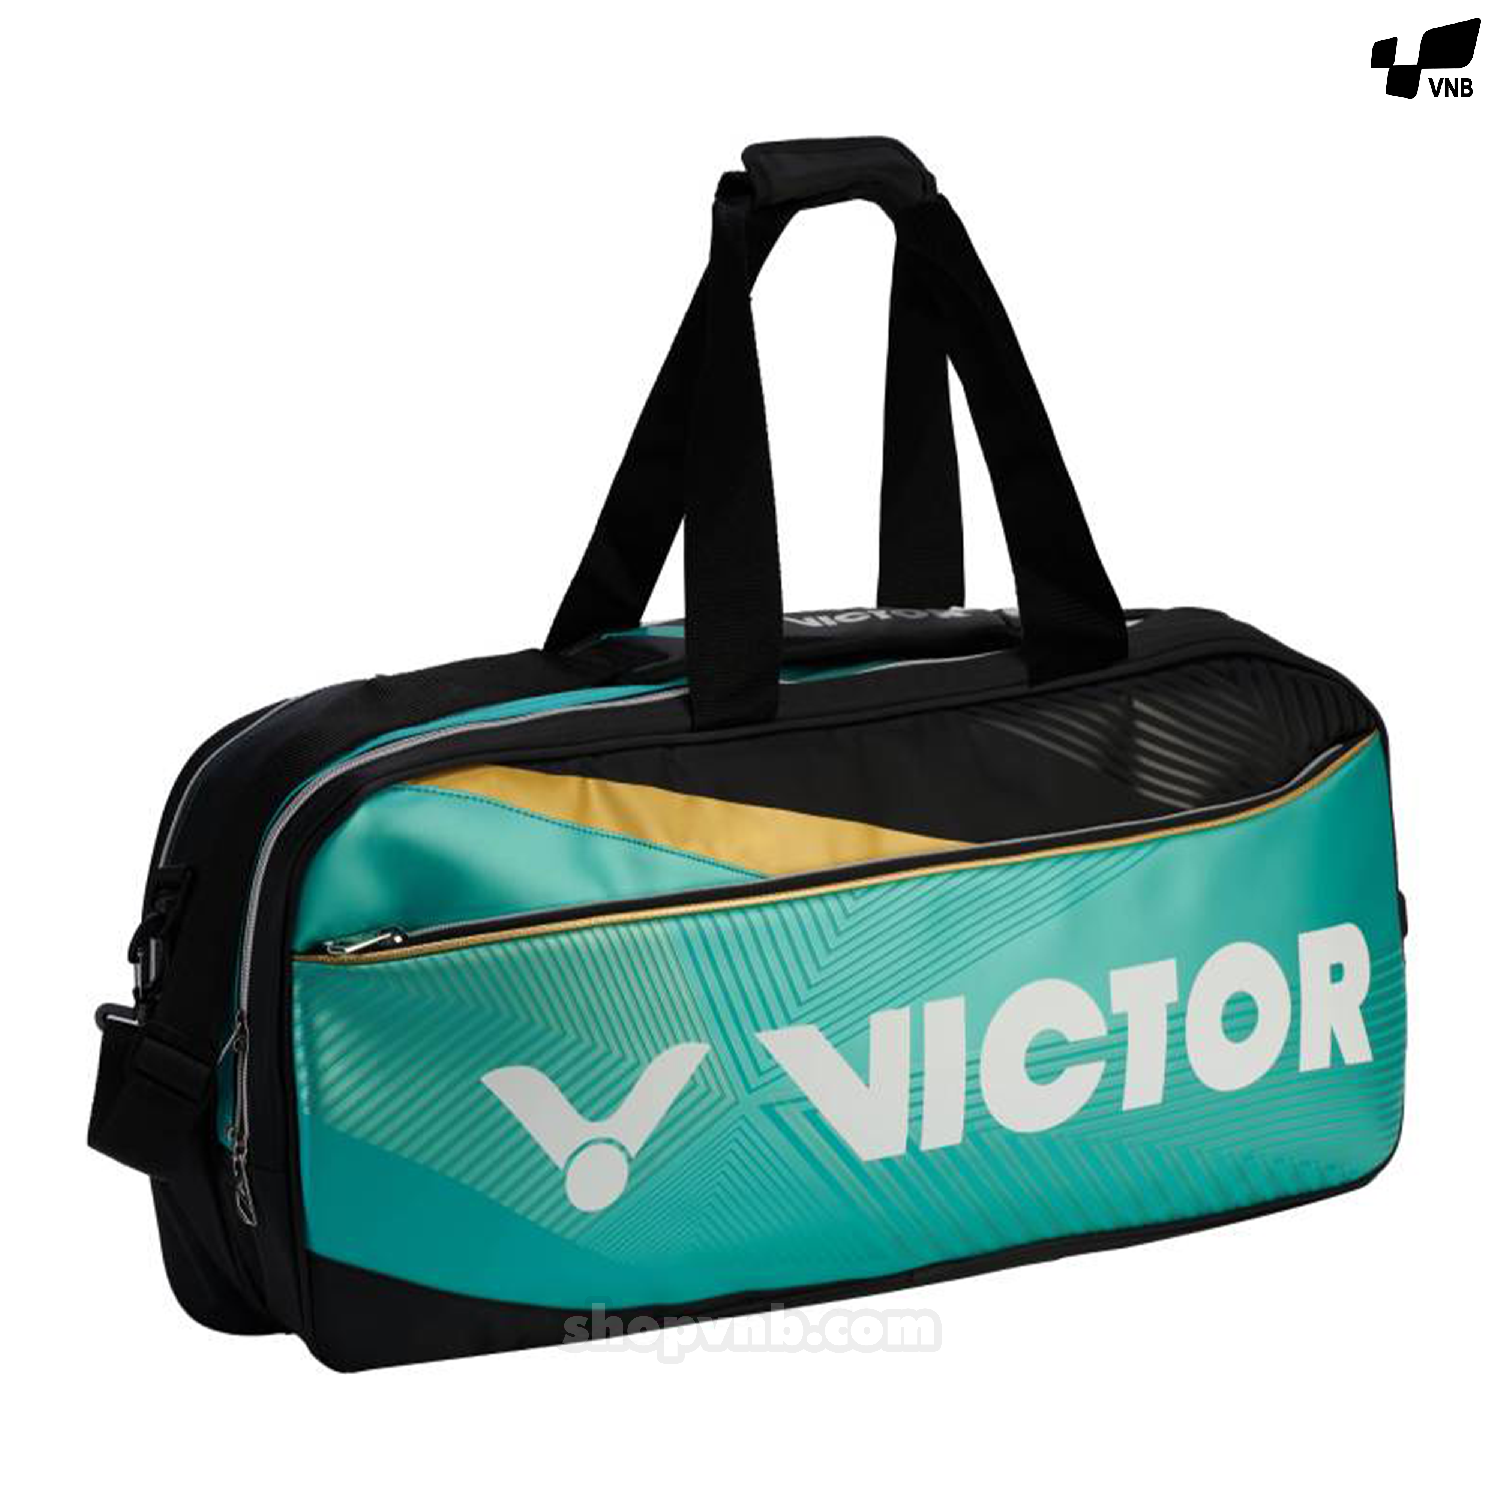 Túi cầu lông Victor BR 9609 CR xanh chính hãng